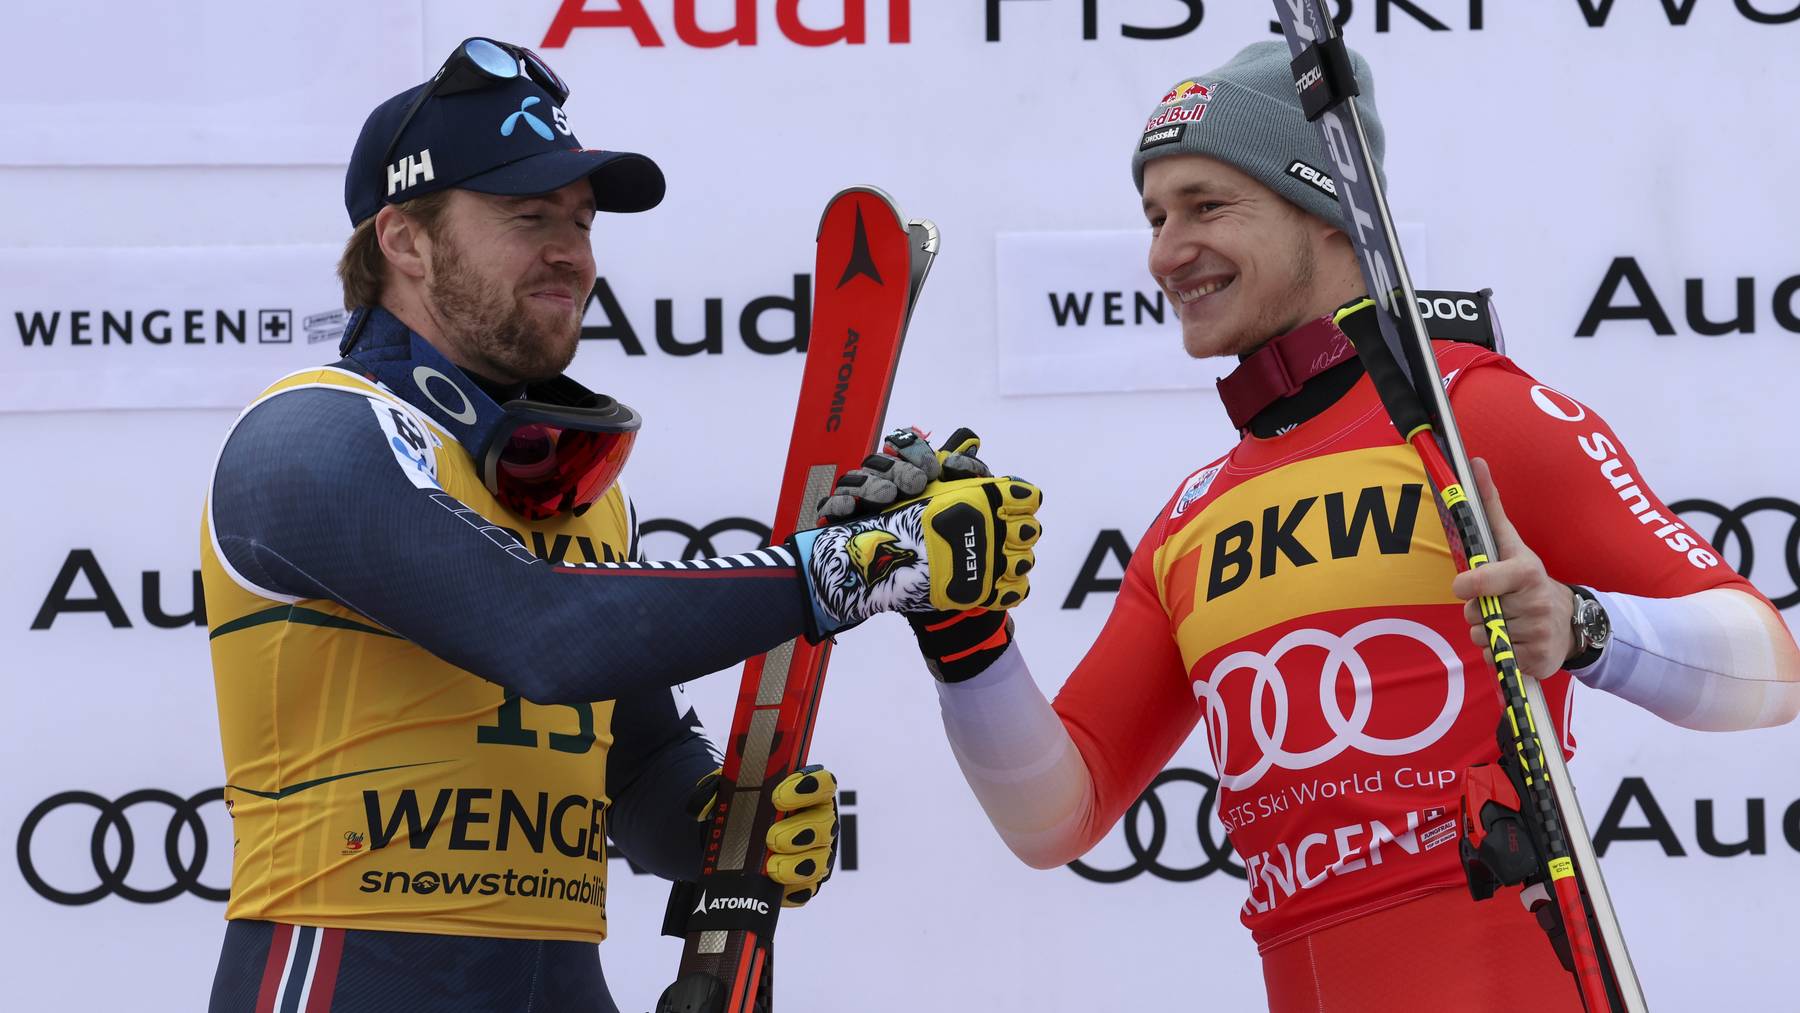 Aleksander Aamodt Kilde und Marco Odermatt gratulieren sich nach dem Super-G-Rennen in Wengen gegenseitig.